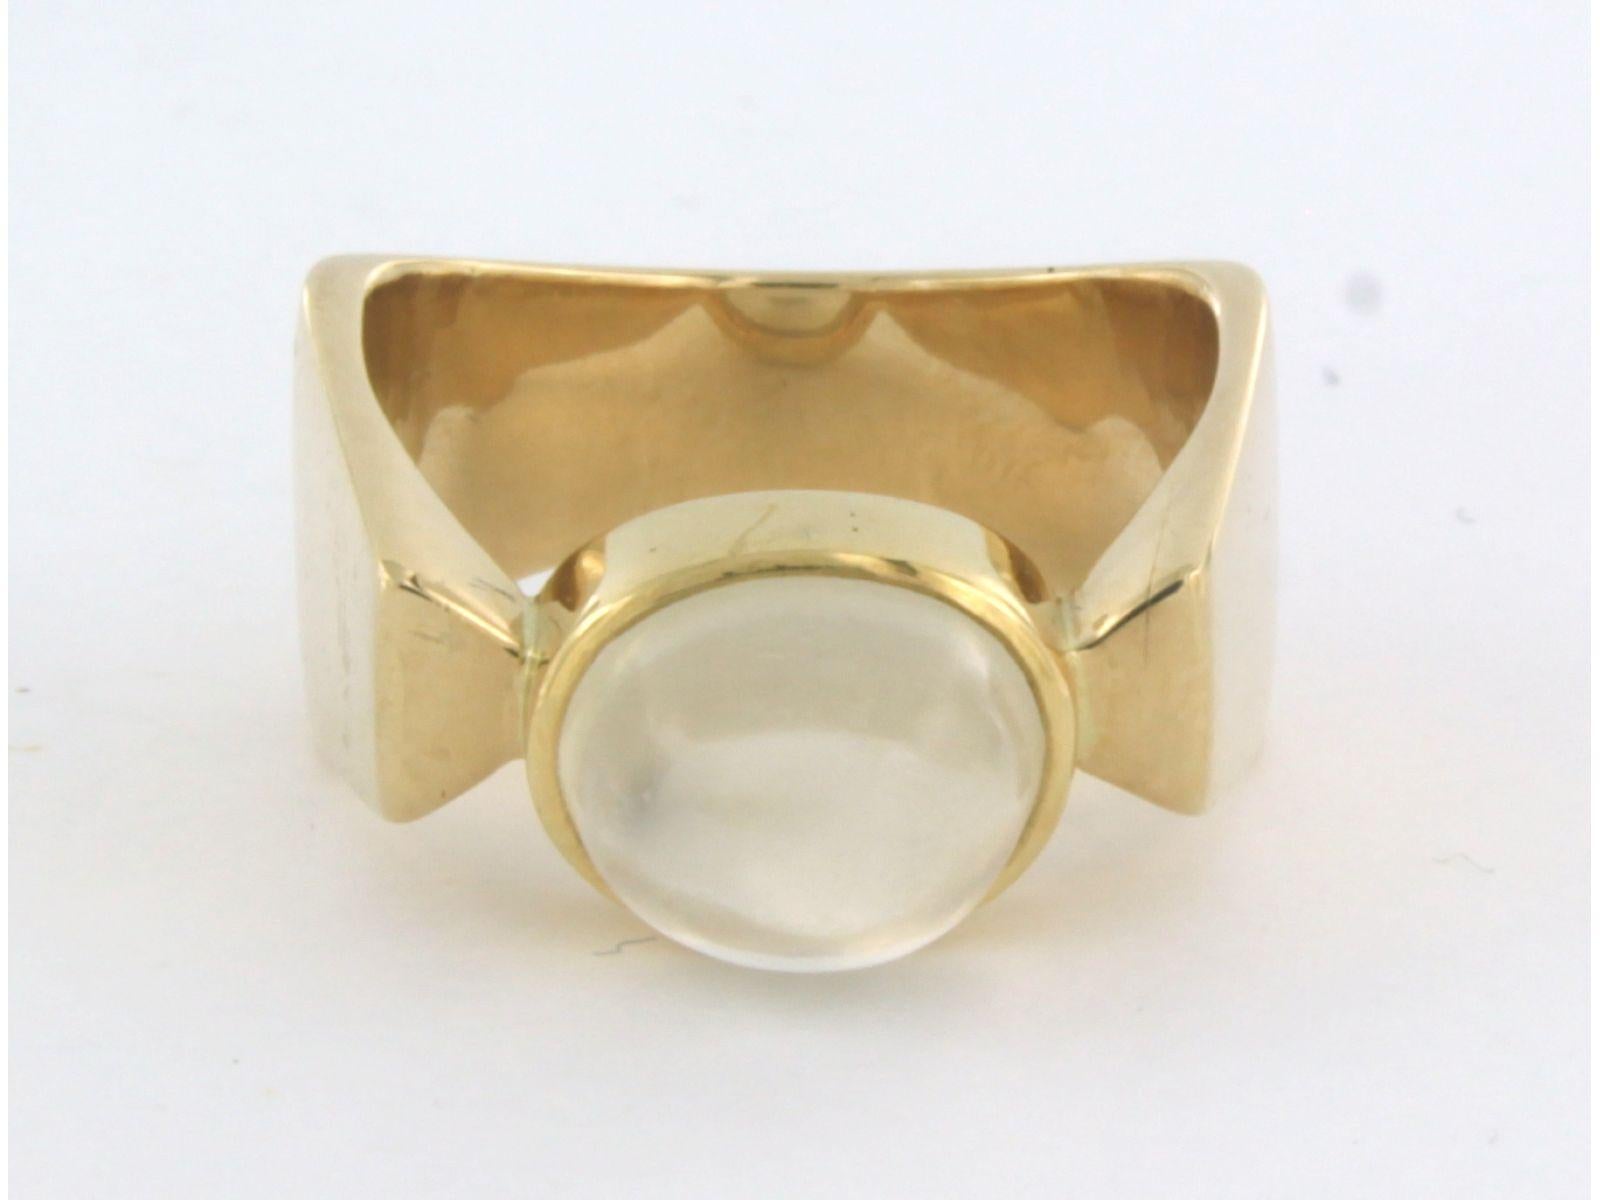 Ring aus 14k Gelbgold mit Mondstein - Ringgröße U.S. 8.5 - EU. 18.5 (58)

detaillierte Beschreibung:

die Oberseite des Rings ist etwa 9,0 mm breit und 1,1 cm hoch

Gewicht 12,0 Gramm

Ringgröße U.S. 8.5 - EU. 18,5 (58). Der Ring kann kostenlos um